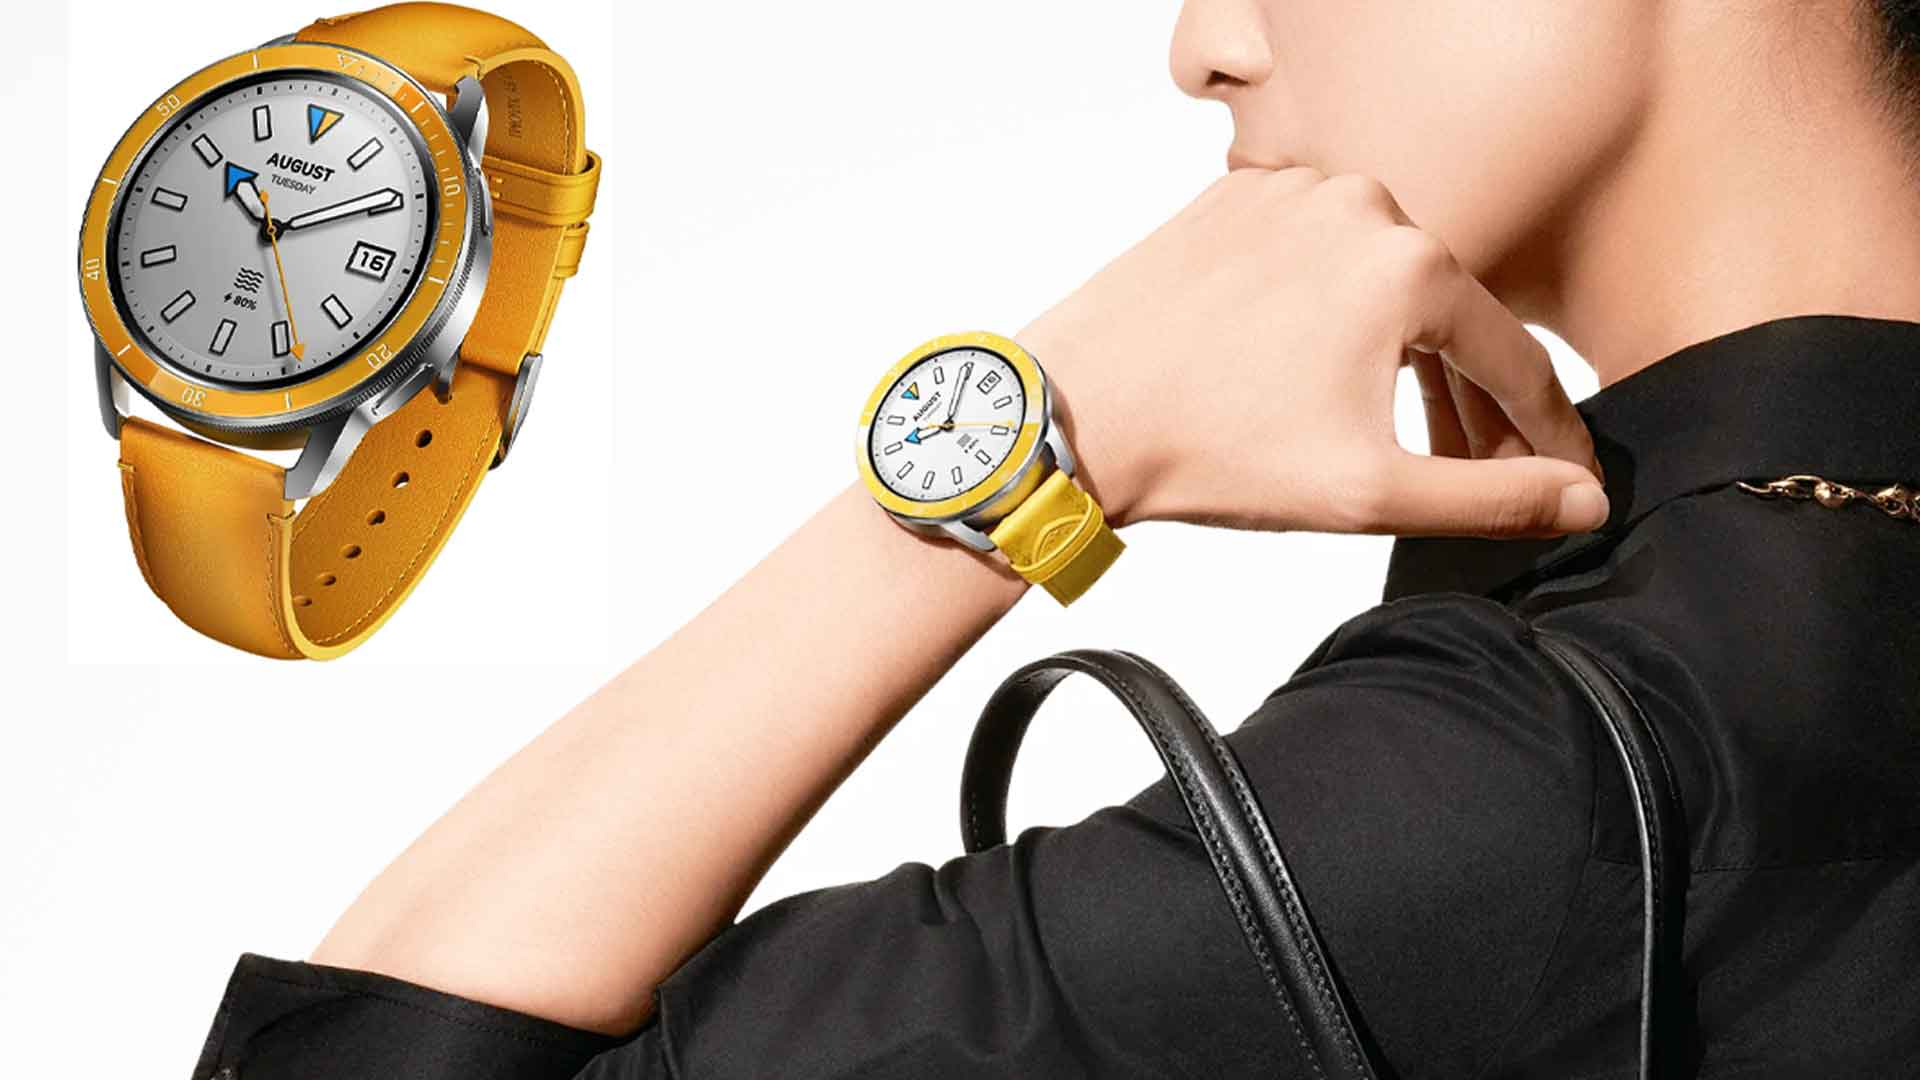 Xiaomi Watch S3, Xiaomi Watch S3 review, Xiaomi Watch S3 features, Xiaomi Watch S3 specs, Xiaomi Watch S3 price, Xiaomi smartwatch, Xiaomi Watch, Mi smartwatch